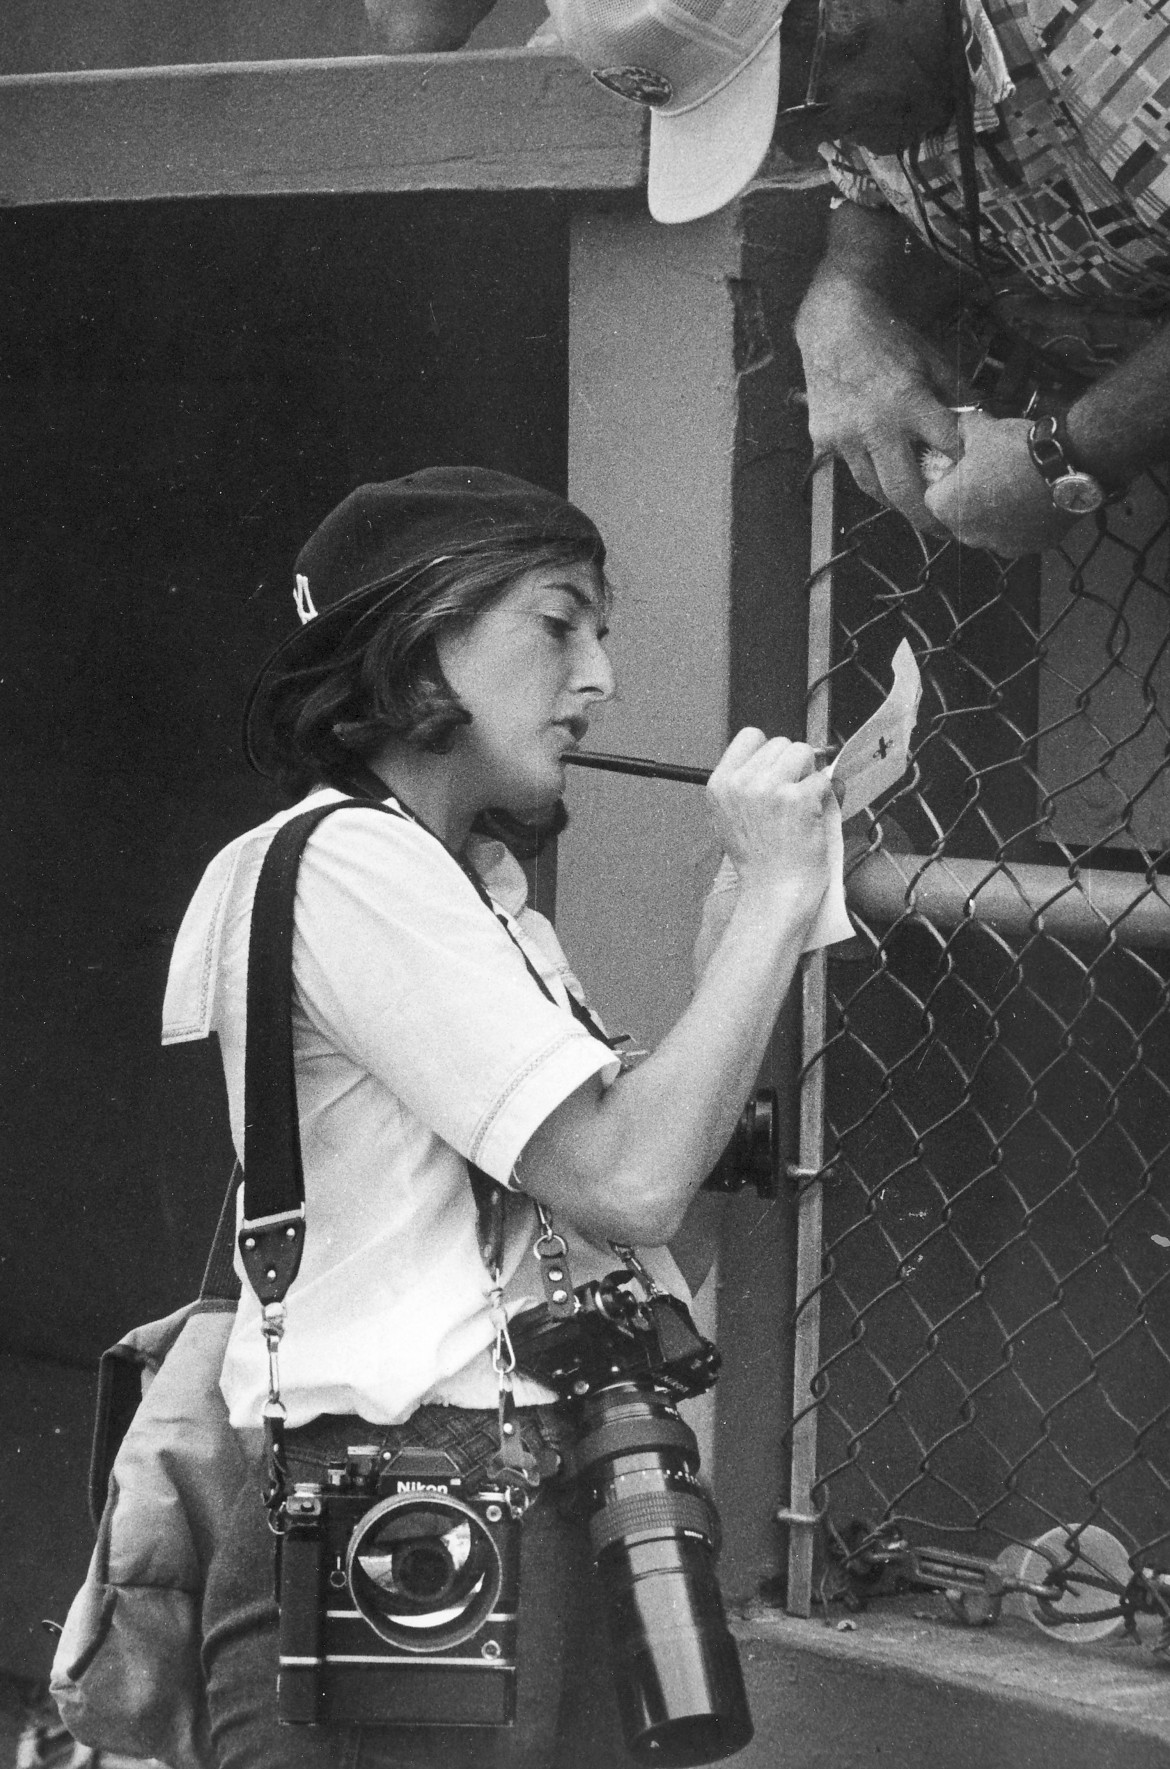 Kathy Willens zbiera informacje o wiosennym treningu baseballu New York Yankees w Fort Lauderdale, Floryda, około 1978 roku.

Willens jest fotografem dla AP od 1976 roku, była trzecią kobietą zatrudnioną w AP. Fotoreporter od 1972 r.